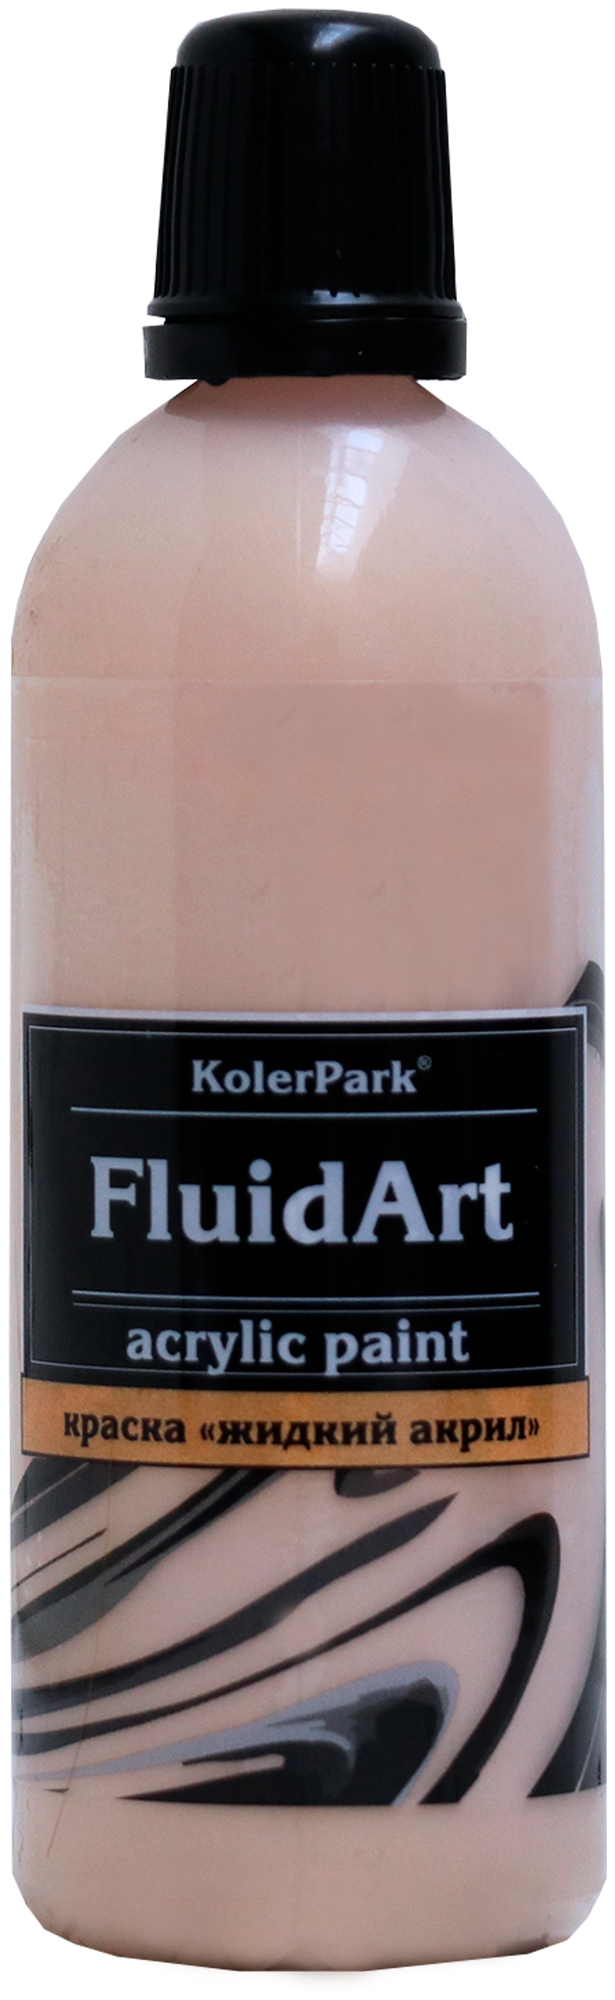 Fluid Art (жидкий акрил) 